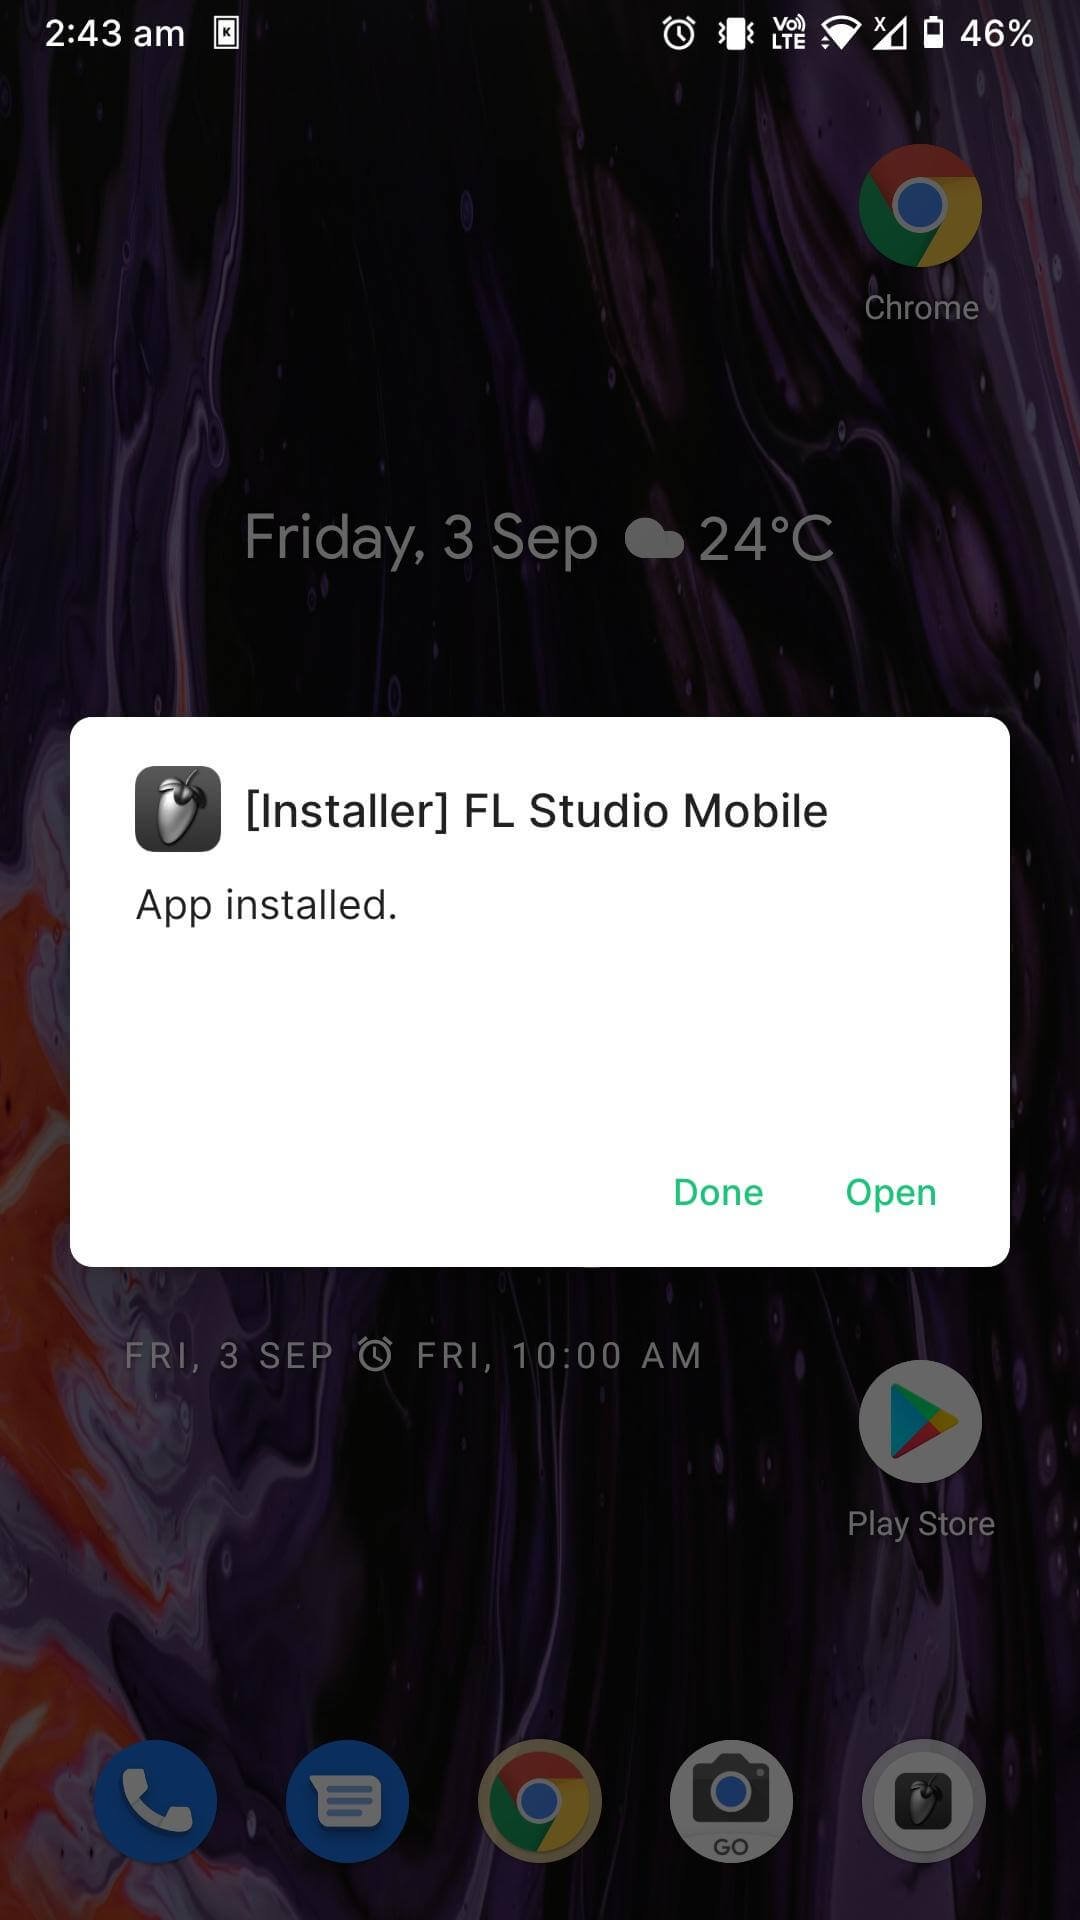 Download FL Studio Mobile Mod Apk v4.4.5 (Pro Unlocked)